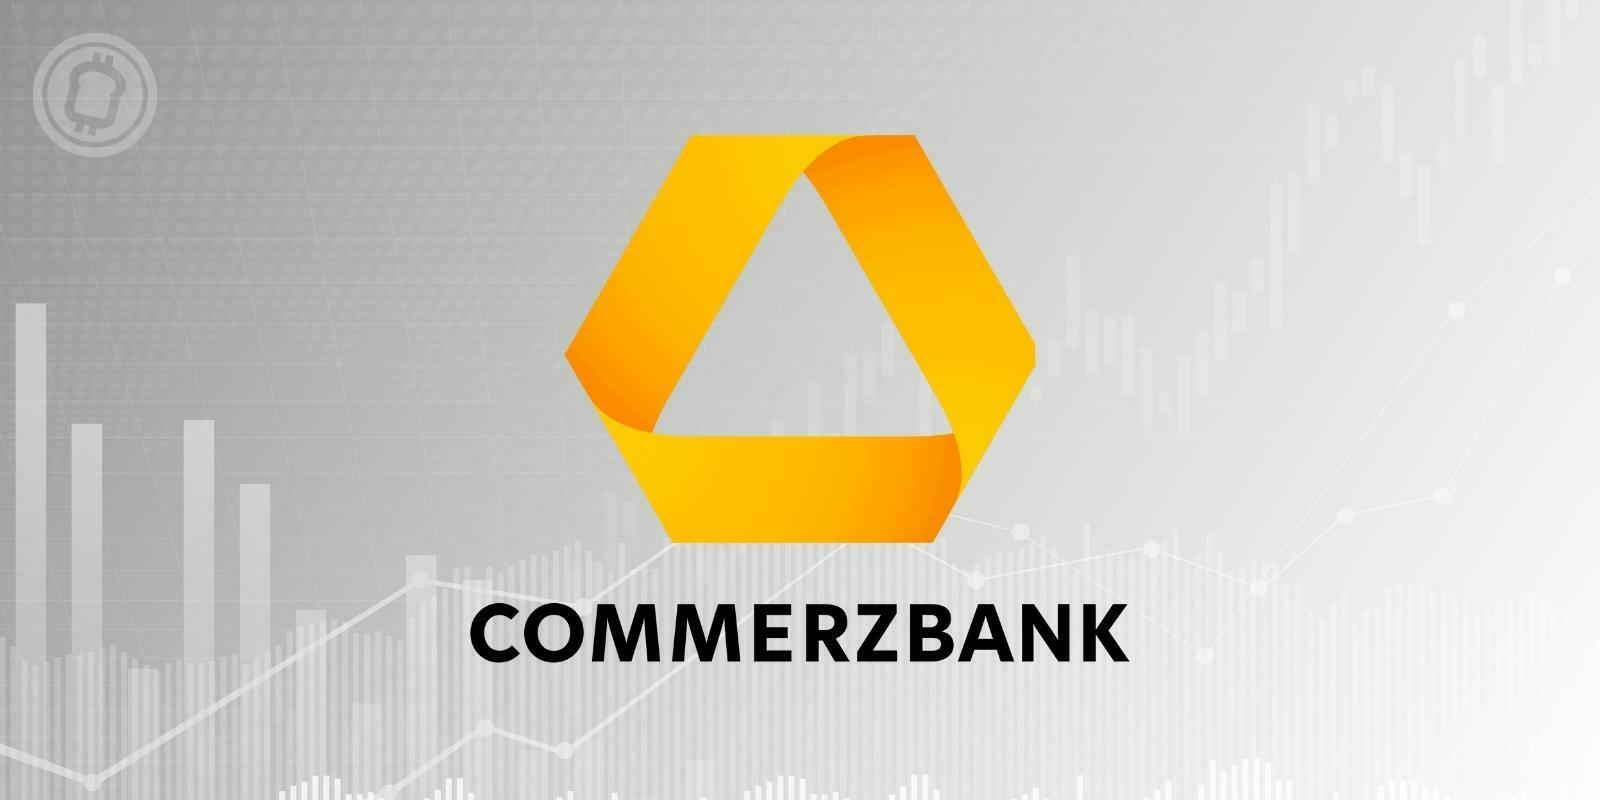 La Commerzbank effectue une demande de licence de cryptomonnaies en Allemagne